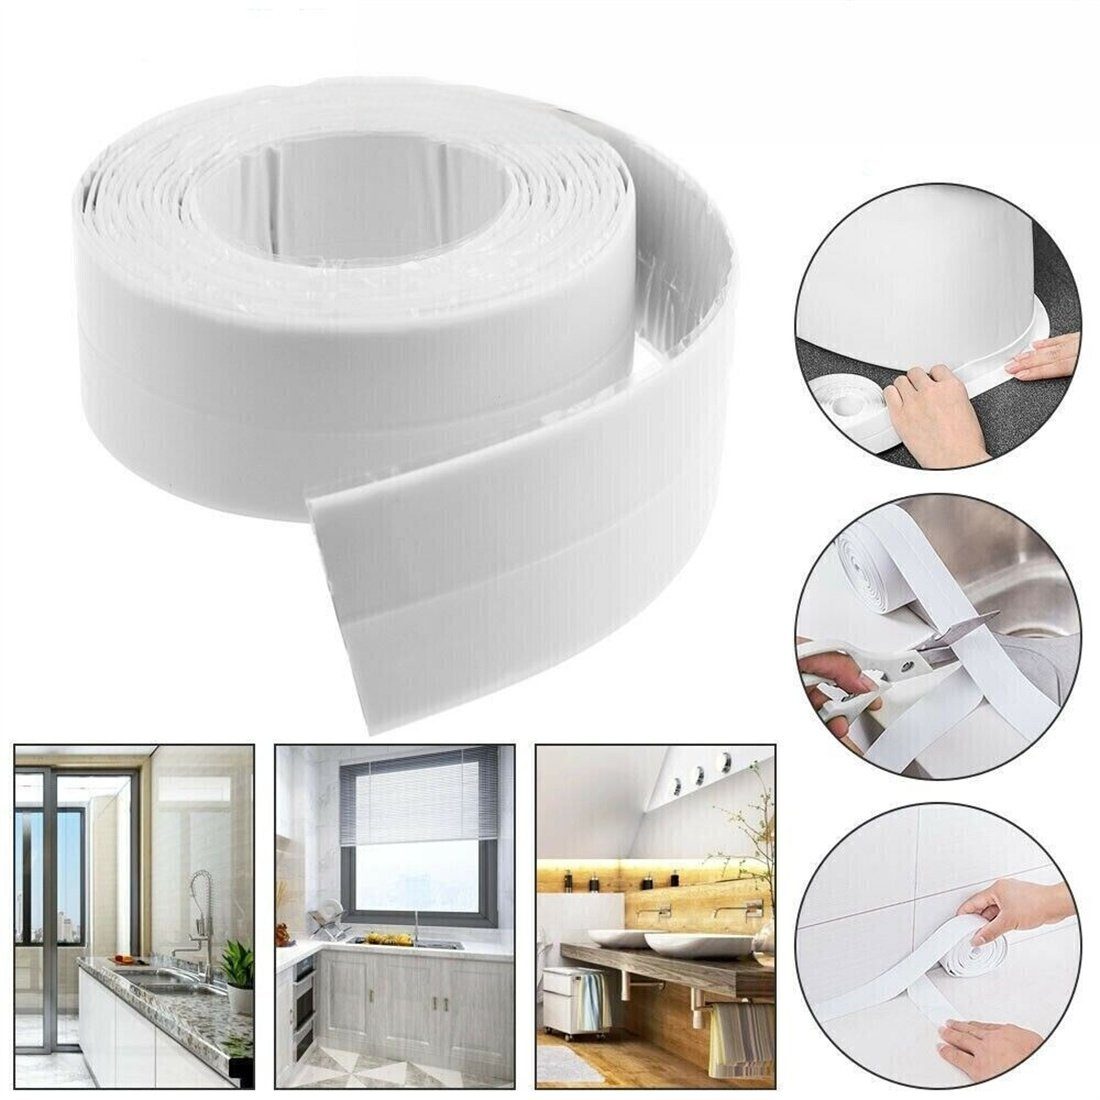 selbstklebend Badezimmer Dusche Klebeband Küche Wanne breit3.8cm DÖRÖY Wannendichtband